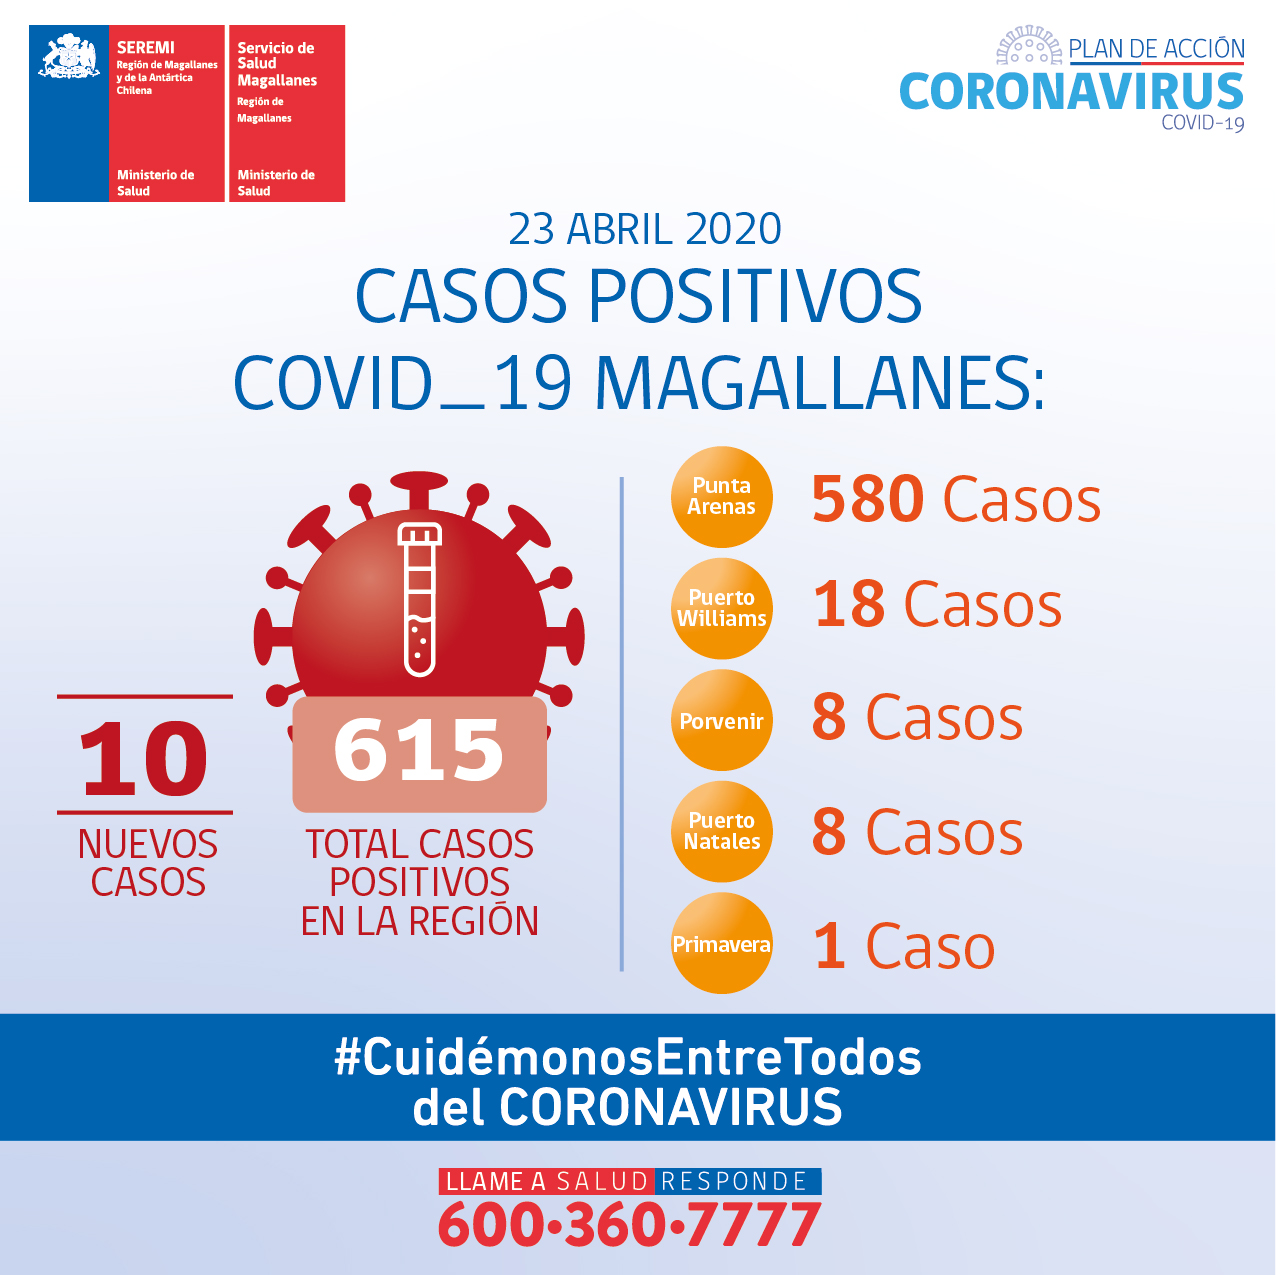 10 nuevos casos de Covid19 y 615 personas contagiadas en total en la región: Informe SEREMI de Salud de Magallanes